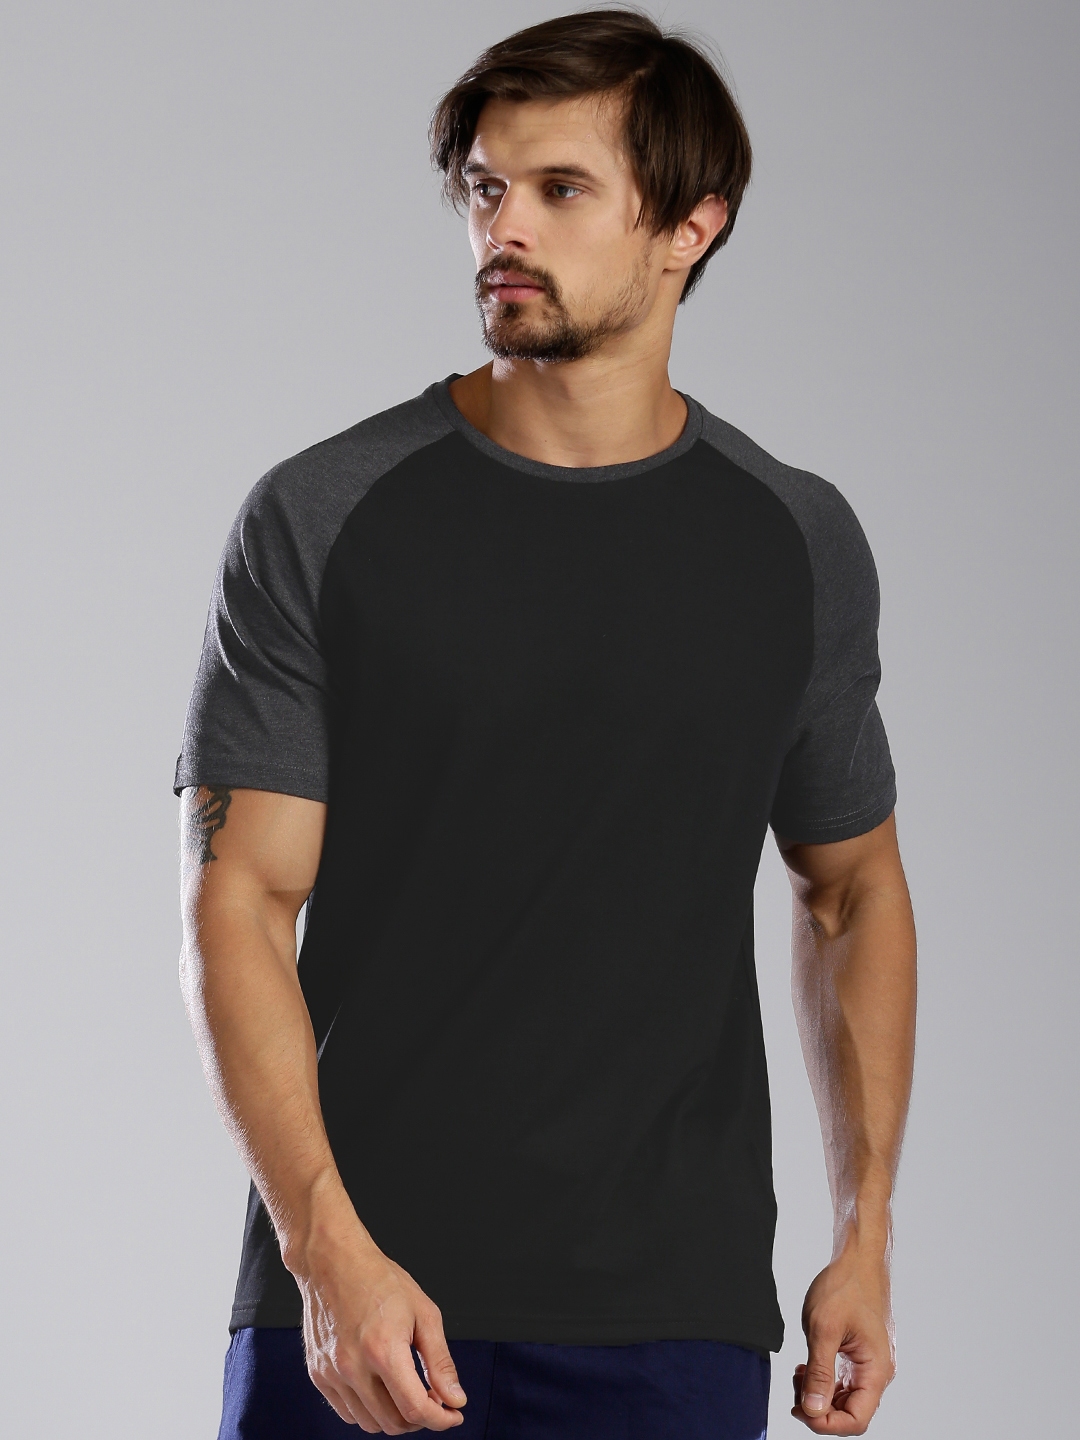 Sammenhængende overskud Spændende Buy Kappa Men Black Solid Round Neck T Shirt - Tshirts for Men 1752392 |  Myntra